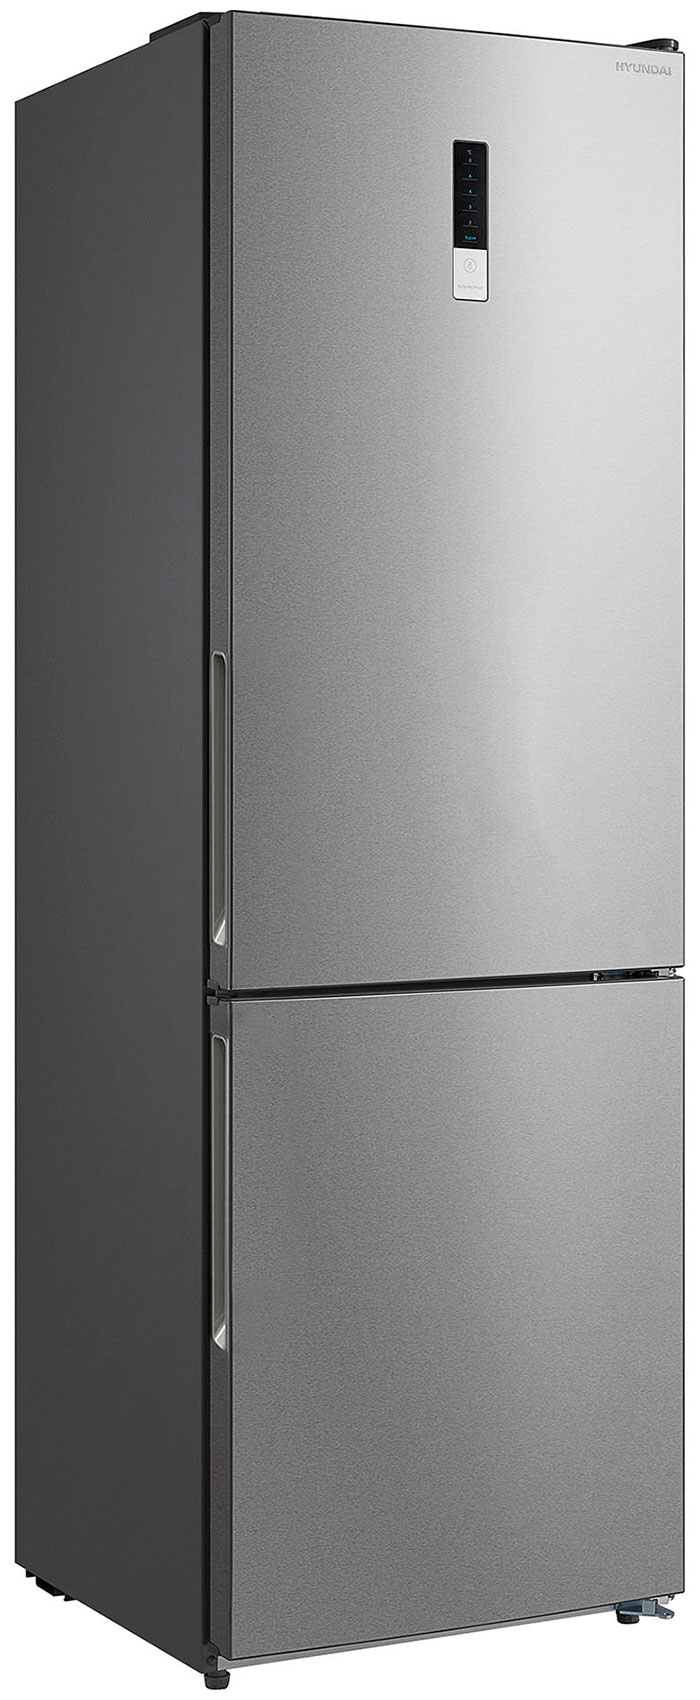 Двухкамерный холодильник Hyundai CC3595FIX нержавеющая сталь фото